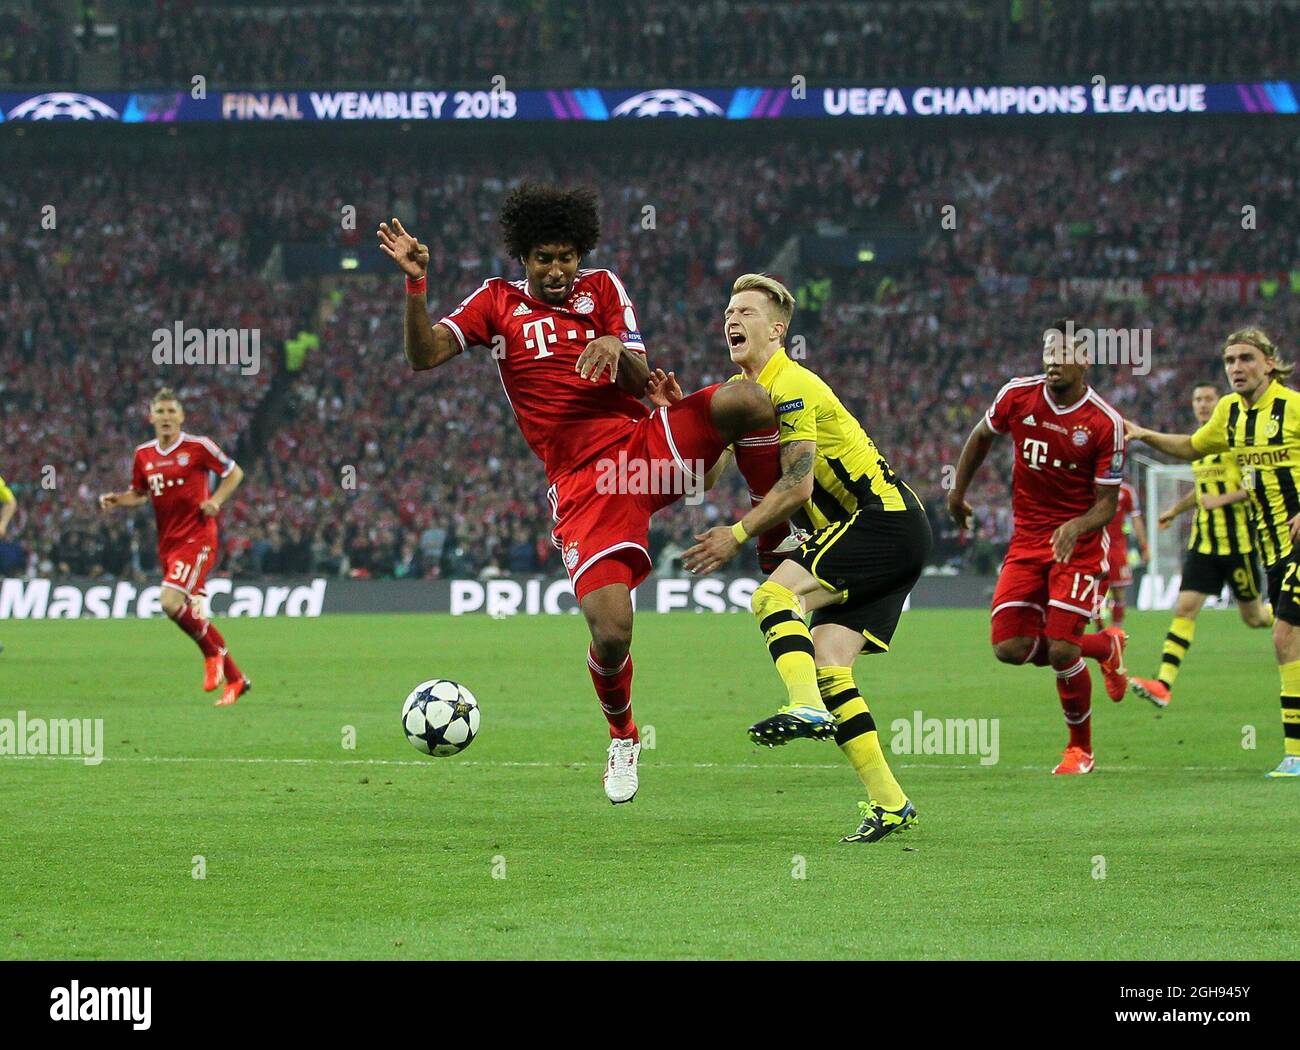 Der Dortmunder Marco Reus wird am 25. Mai 2013 beim UEFA Champions League-Finale  zwischen Borussia Dortmund und Bayern München im Wembley-Stadion in London,  Großbritannien, vom Münchner Dante wegen einer Strafe verurteilt. Pic